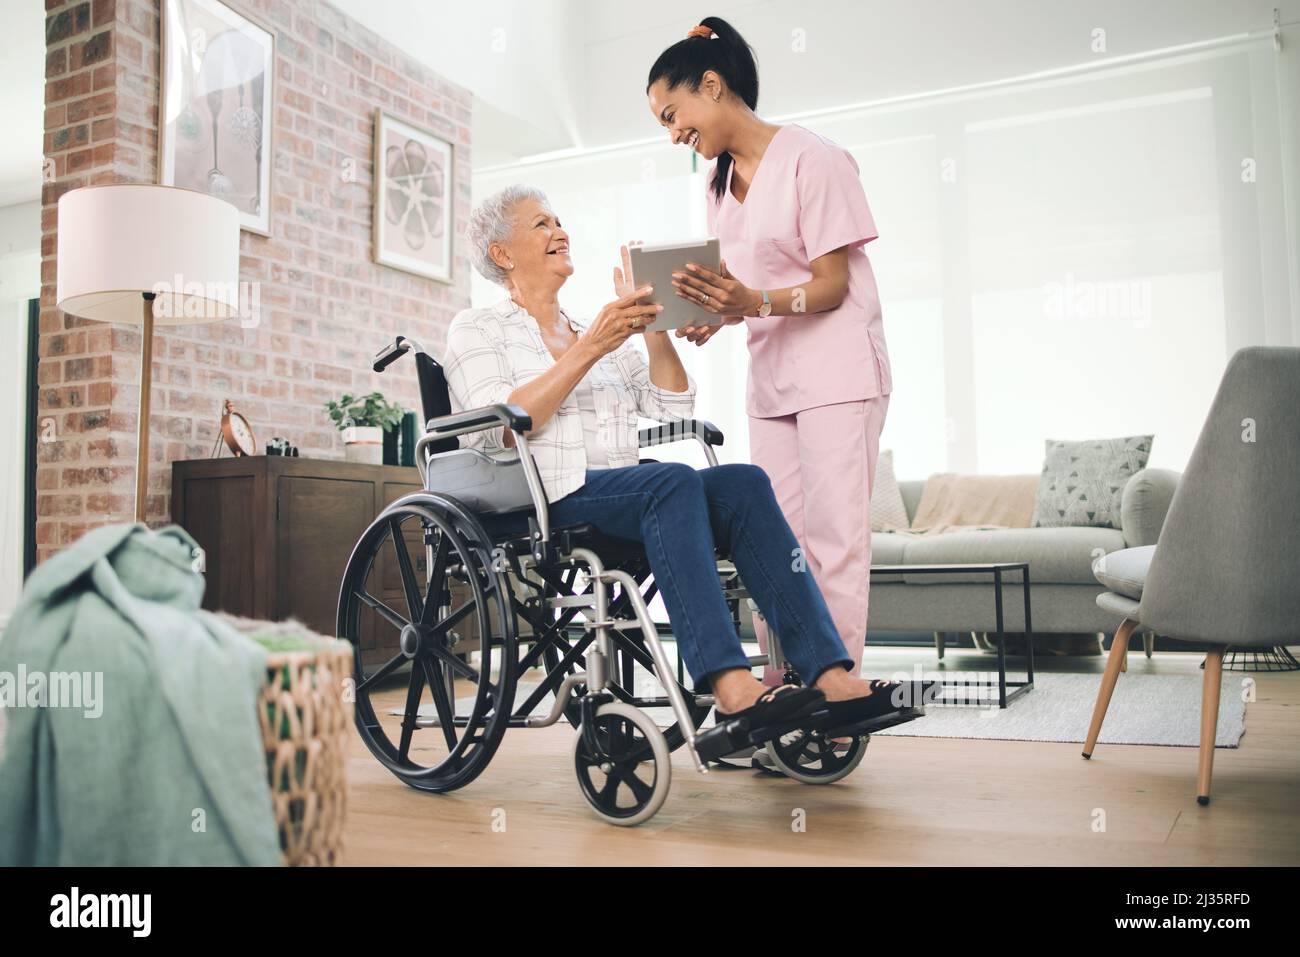 Ich habe all Ihre großen Momente festgehalten. Aufnahme einer jungen Krankenschwester, die Informationen von ihrem digitalen Tablet mit einer älteren Frau im Rollstuhl teilt. Stockfoto